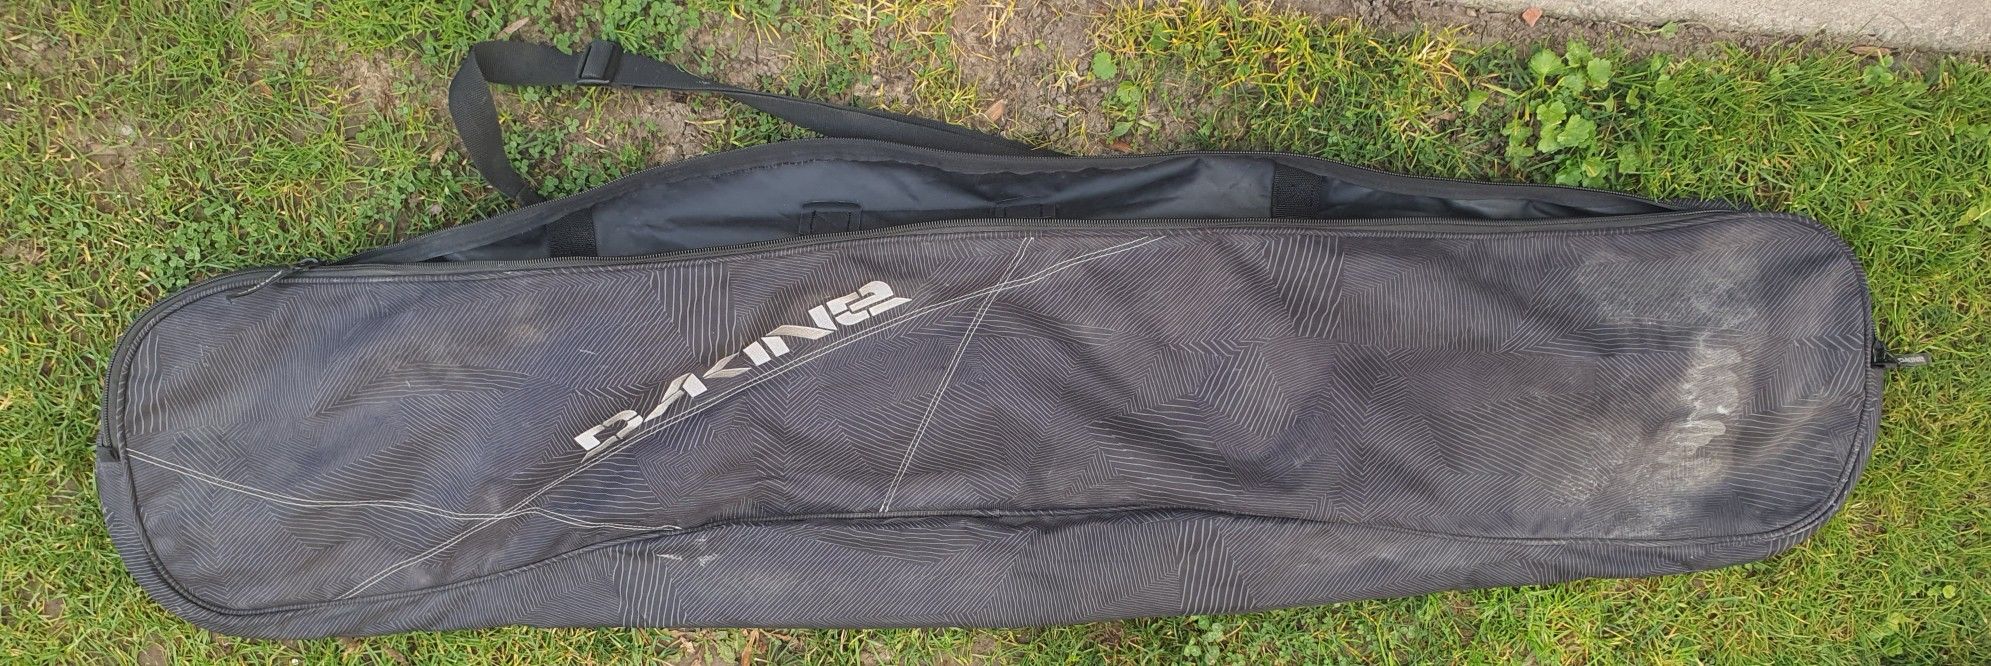 Dakine Snowboard Bag Size 158